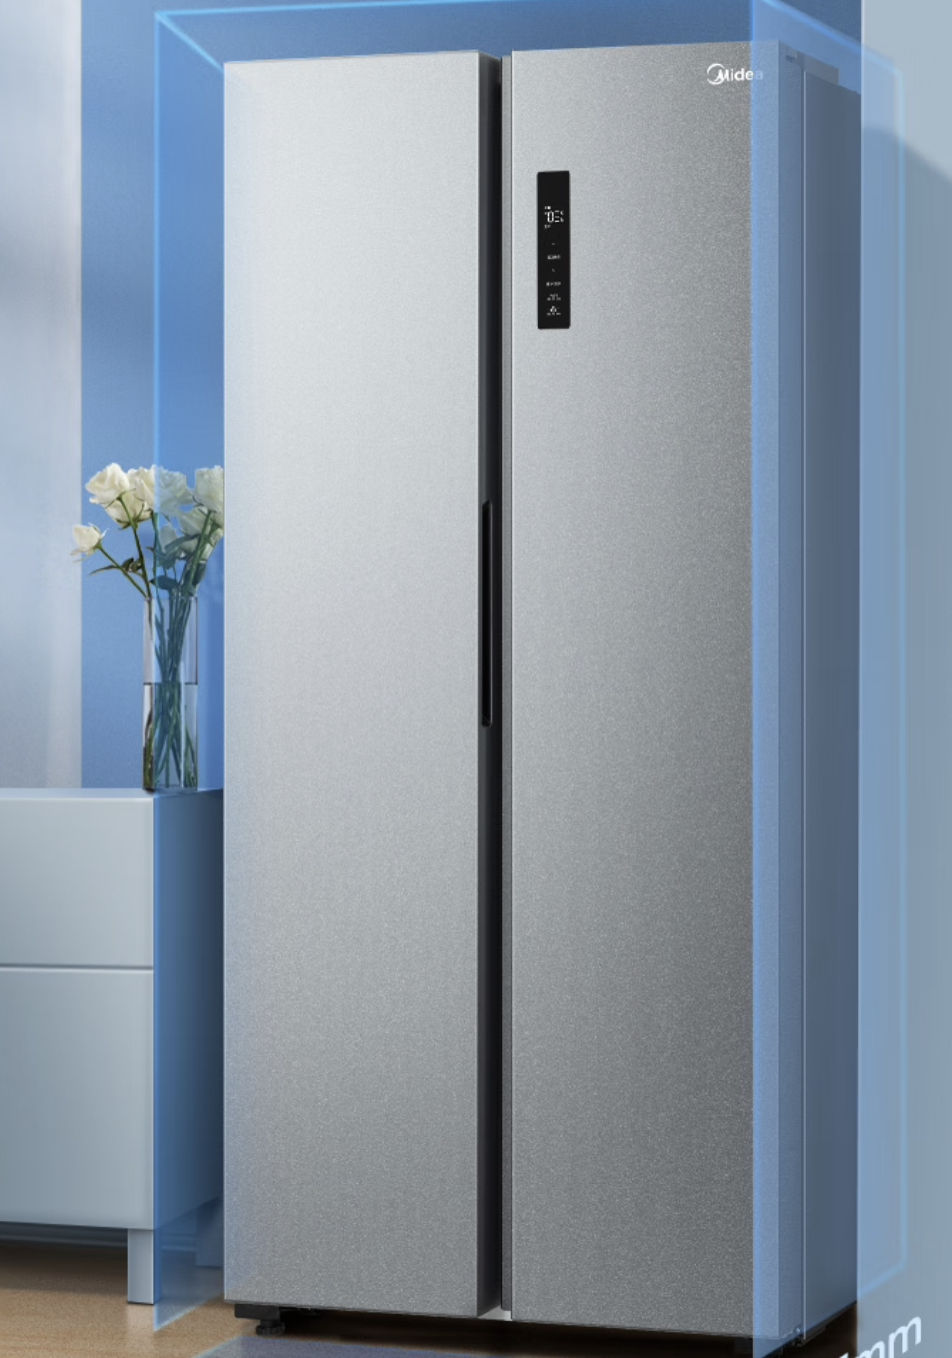 美的470升变频一级能效冰箱双开门无霜超薄机身可嵌入 2399.00元